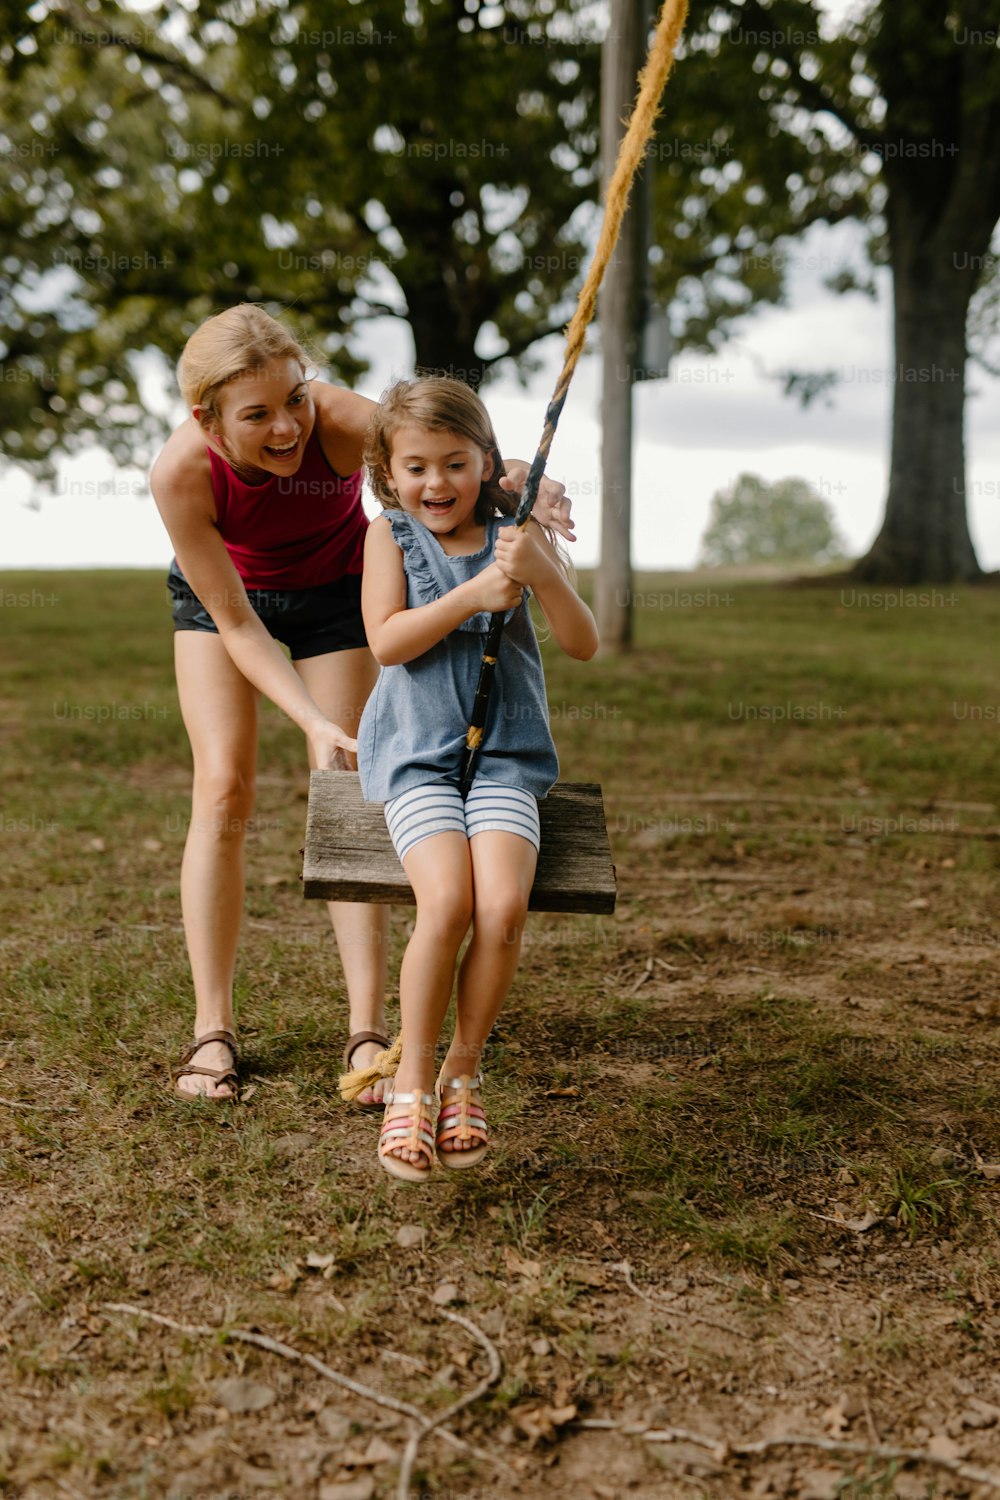 Una niña sosteniendo un bate de béisbol junto a una niña